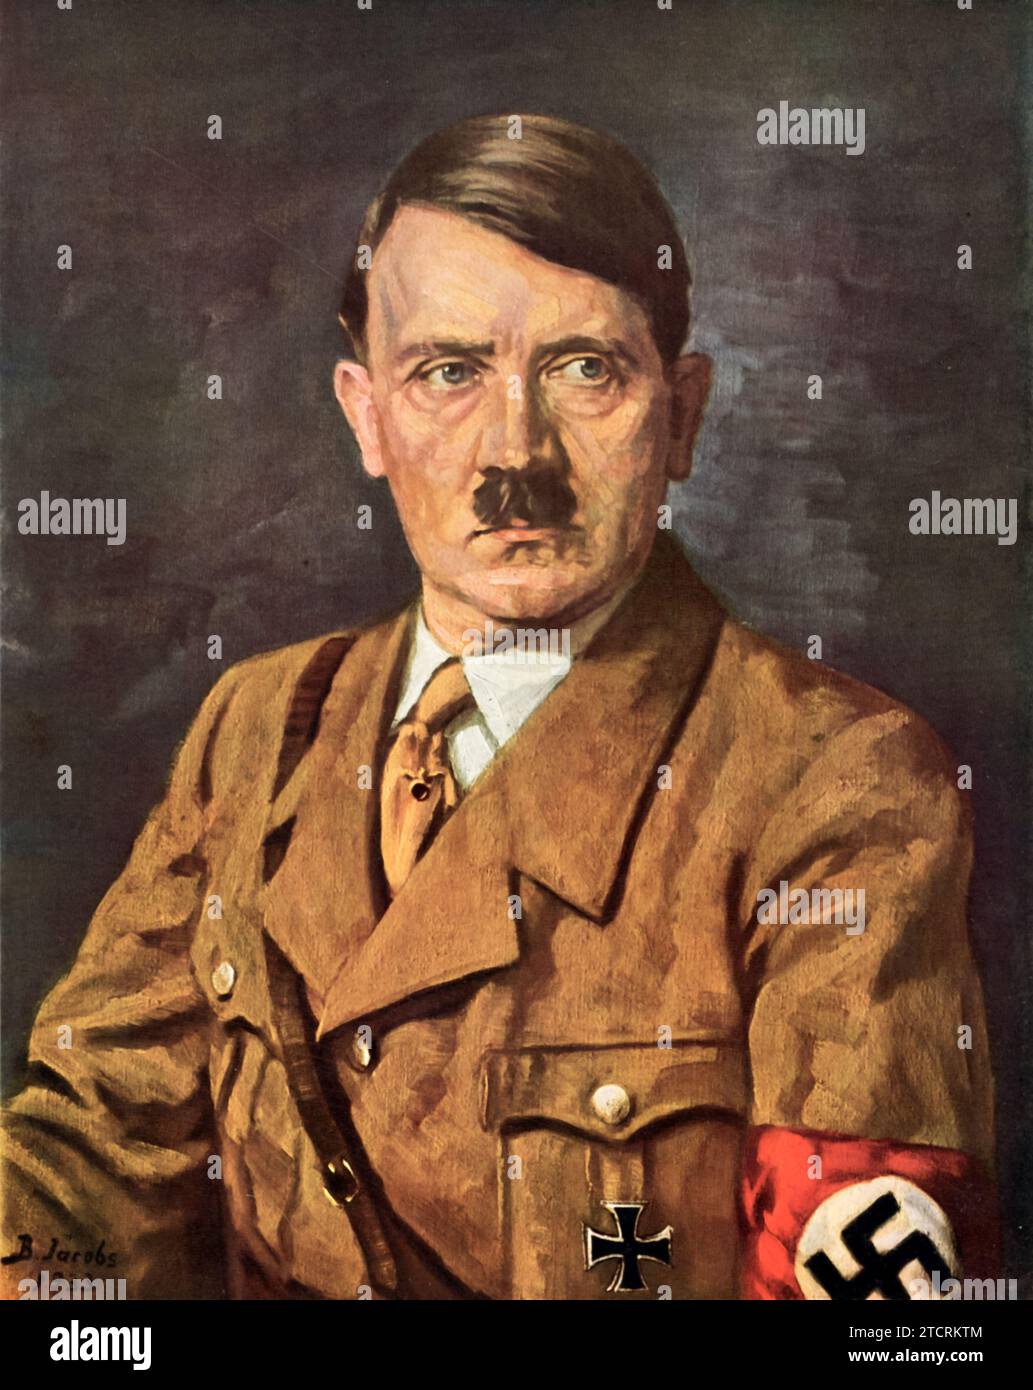 Portrait d'Adolf Hitler, dirigeant allemand, peint en 1933 par B Von Jacobs. Cette peinture colorée représente Hitler pendant une période significative, juste au moment où il accède au pouvoir en Allemagne. L'œuvre capture la figure historique dans une pose formelle, reflétant le style artistique et les techniques de portrait du début des années 1930 Banque D'Images